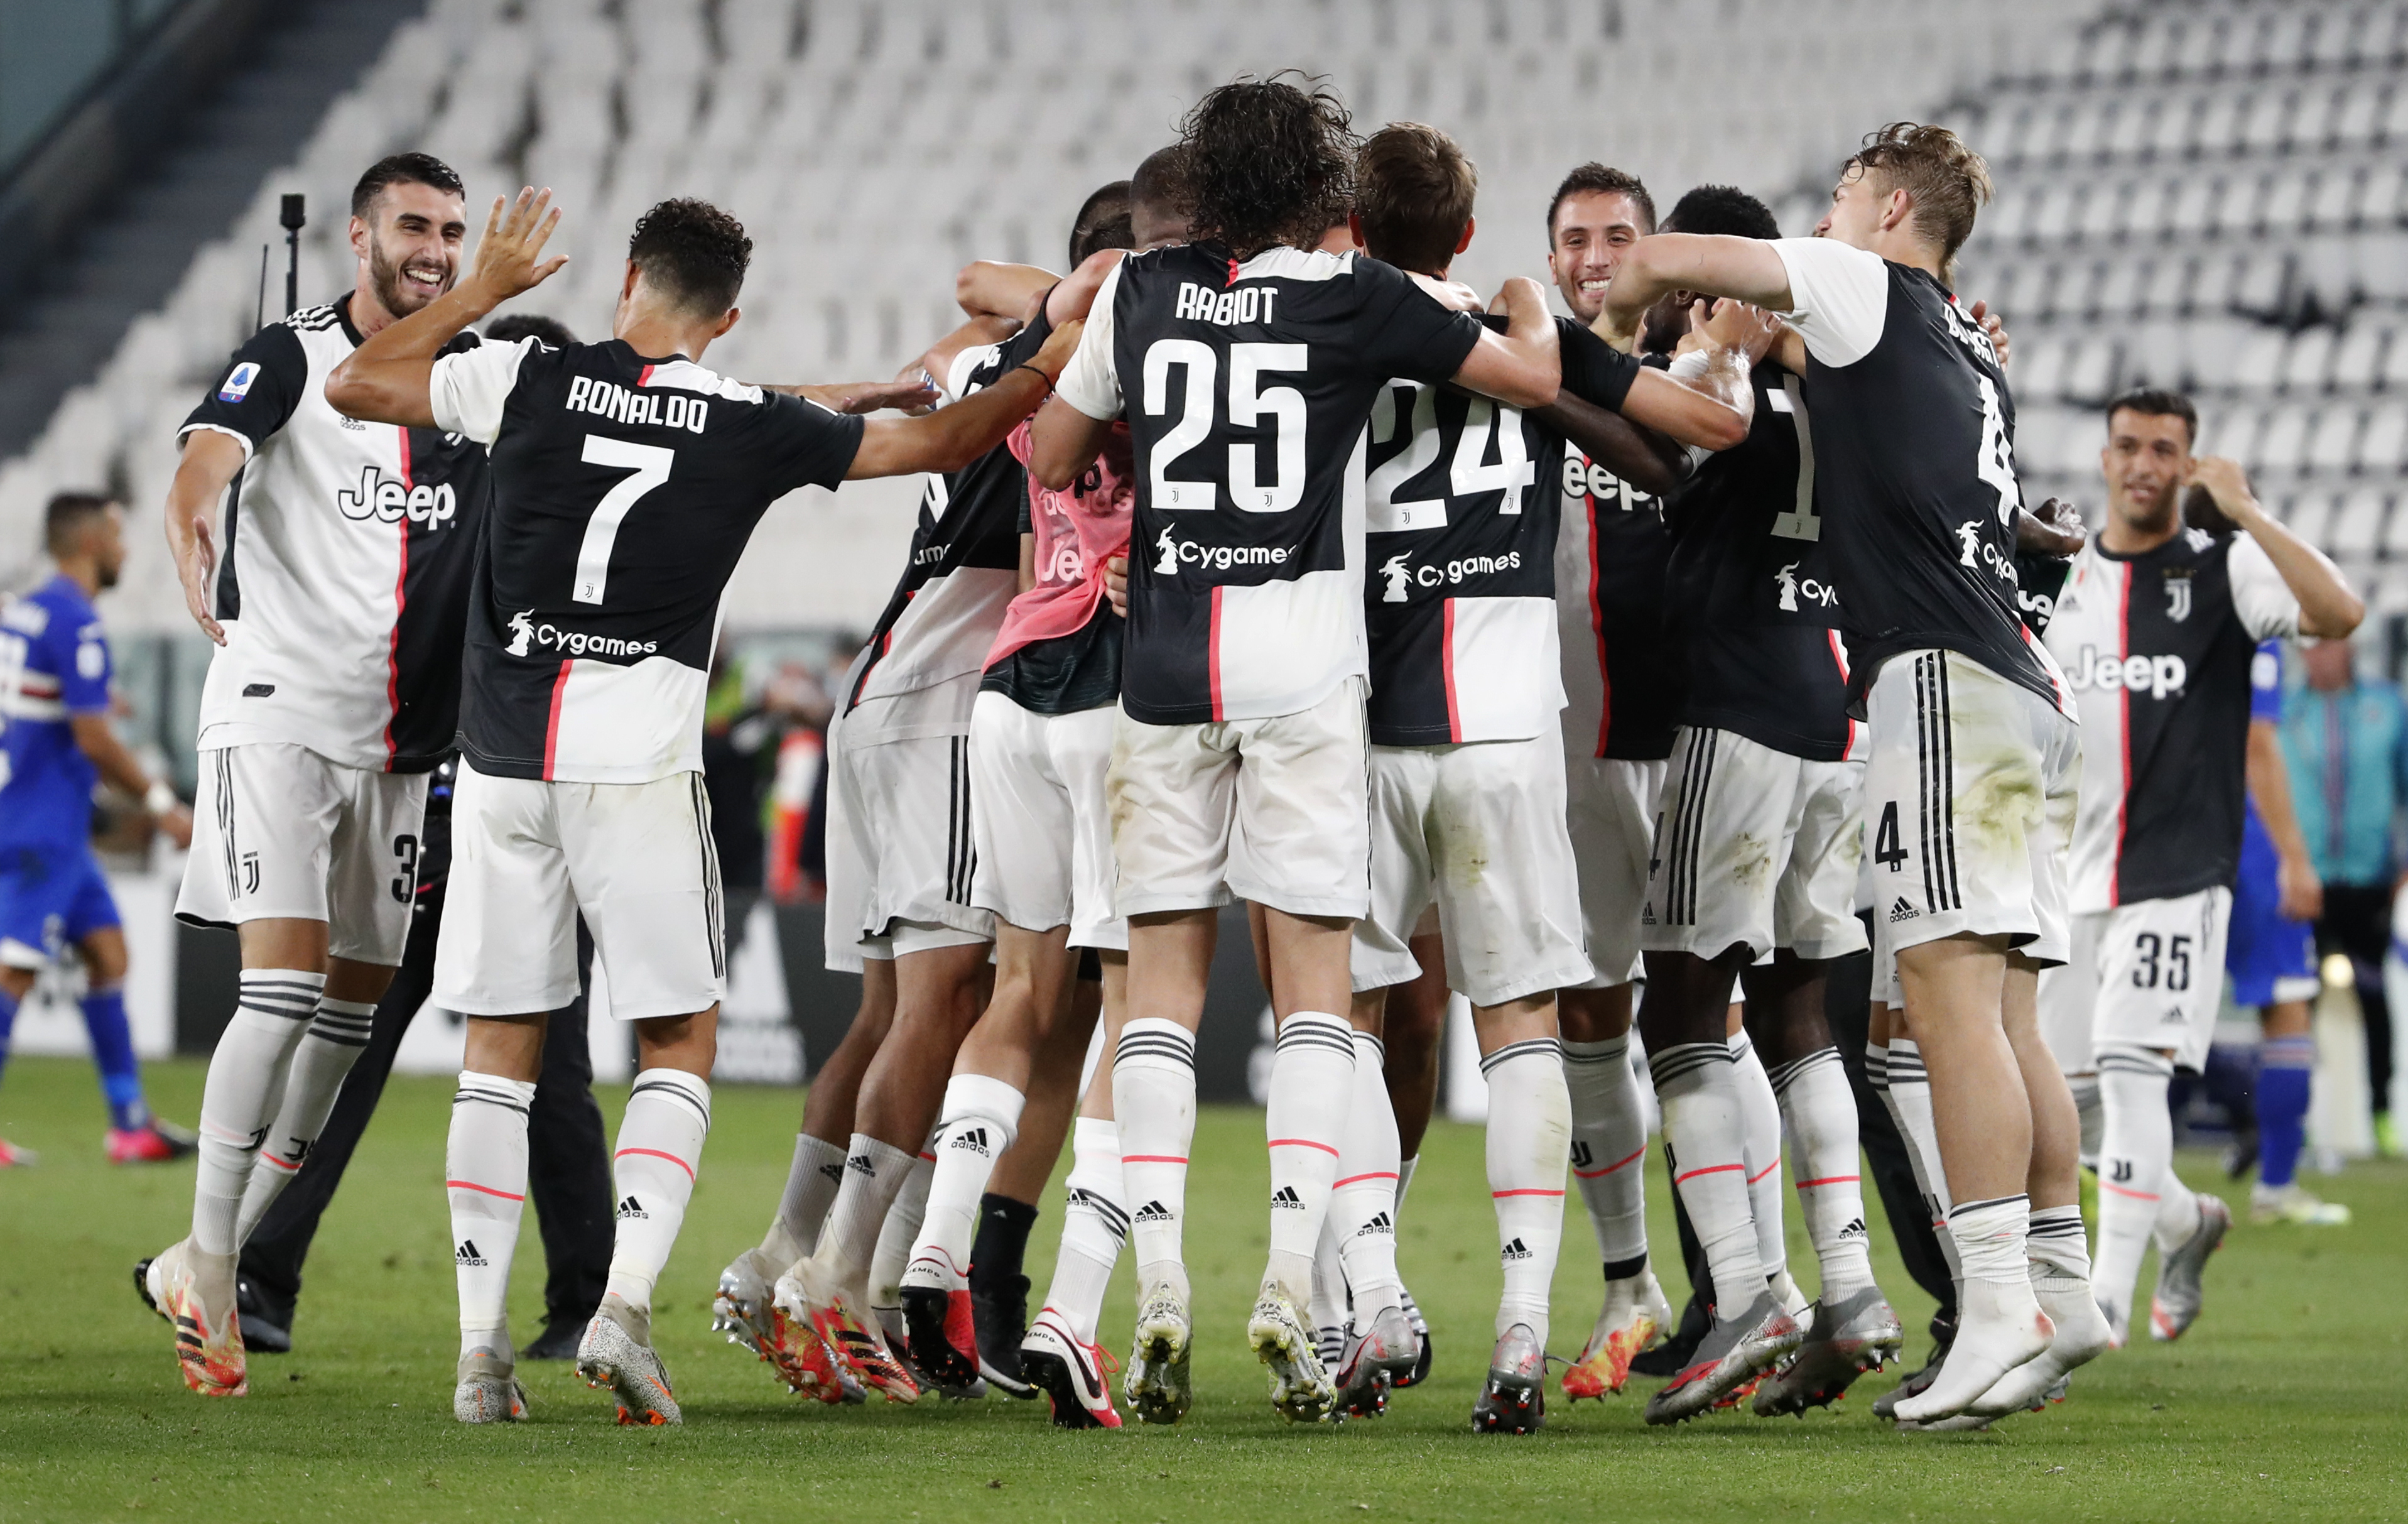 Los jugadores de la Juventus festejan el título luego de ganarle 2-0 a la Sampdoria. (AP Photo/Antonio Calanni)